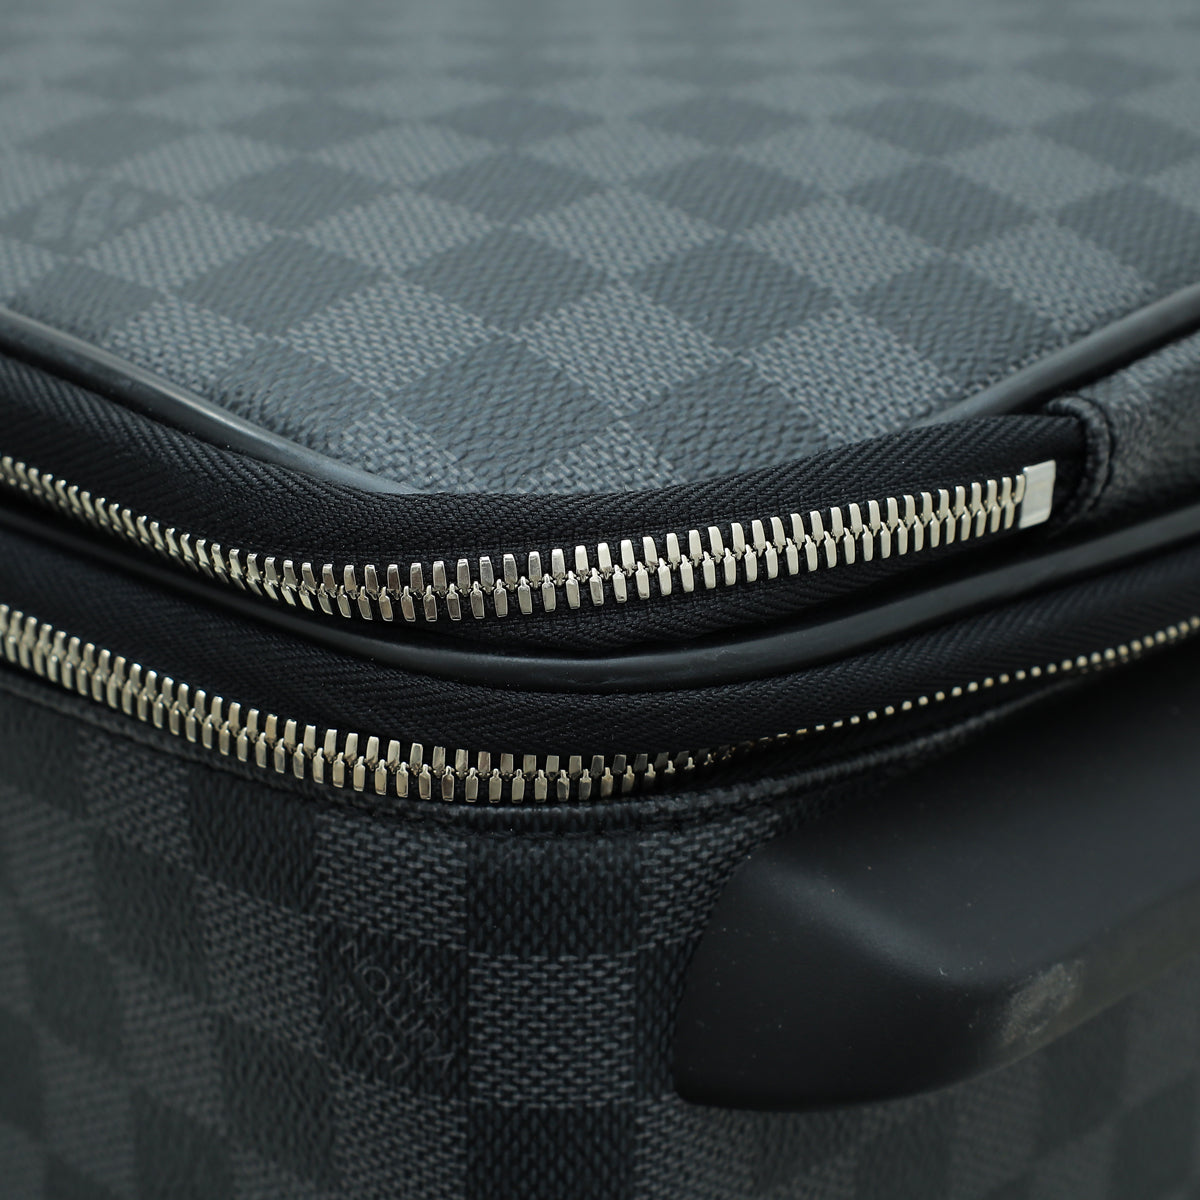 Louis Vuitton Graphite Pegase Legere Business 55 Suitcase